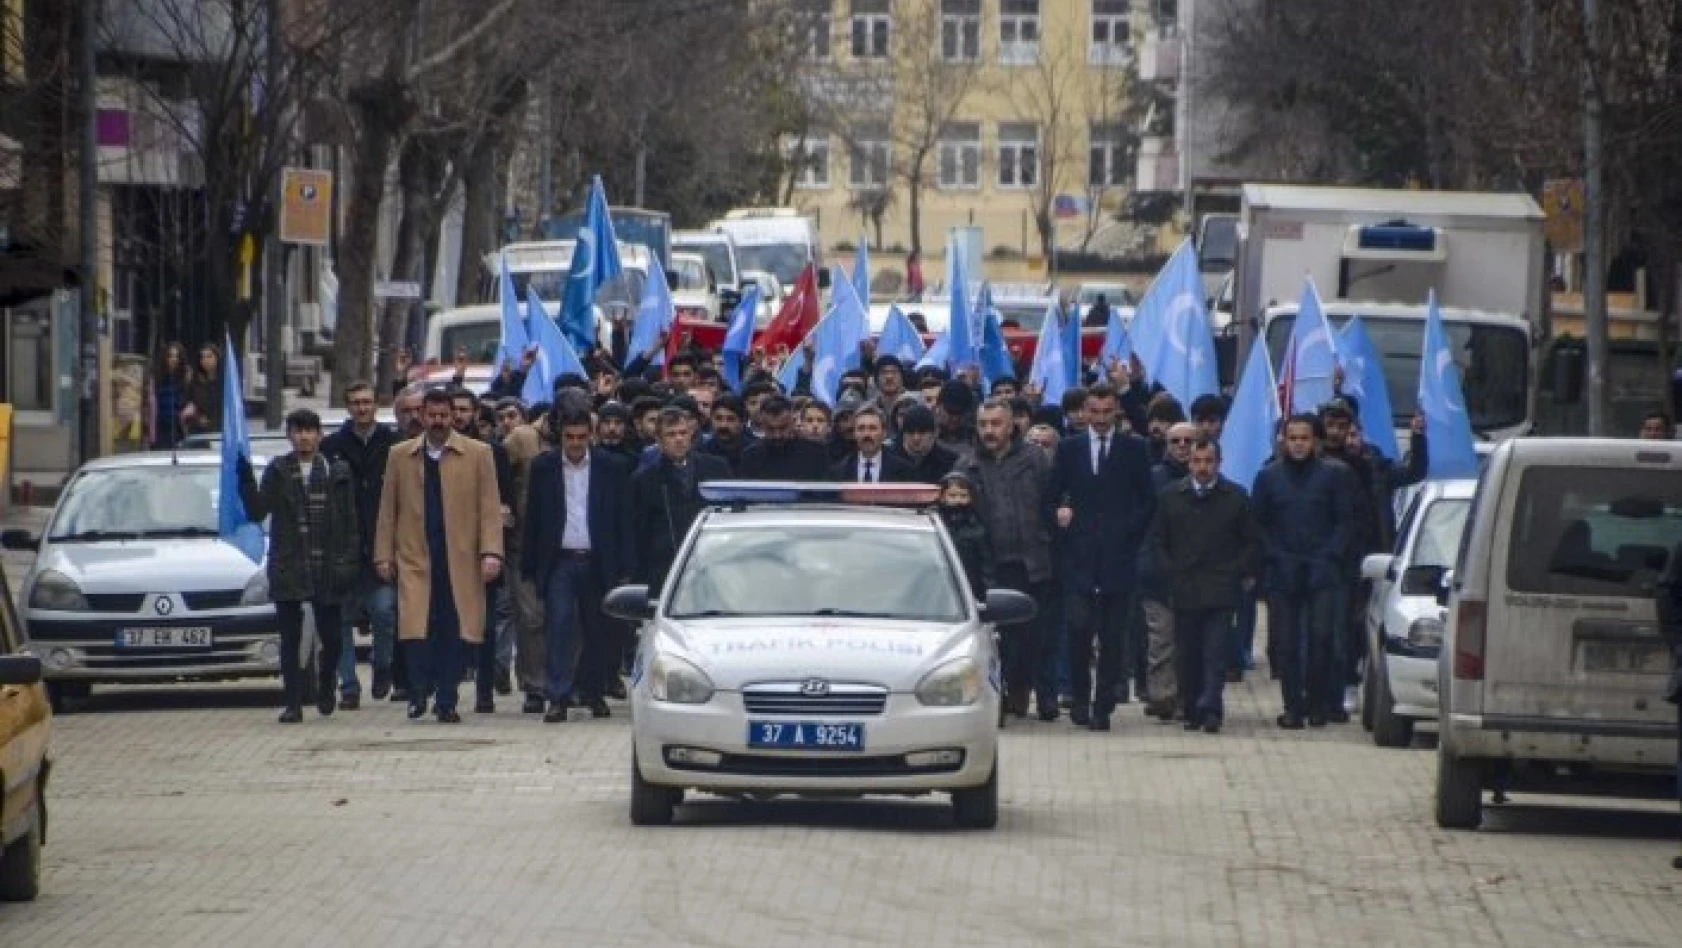 Ülkücüler Doğu Türkistan için yürüdü